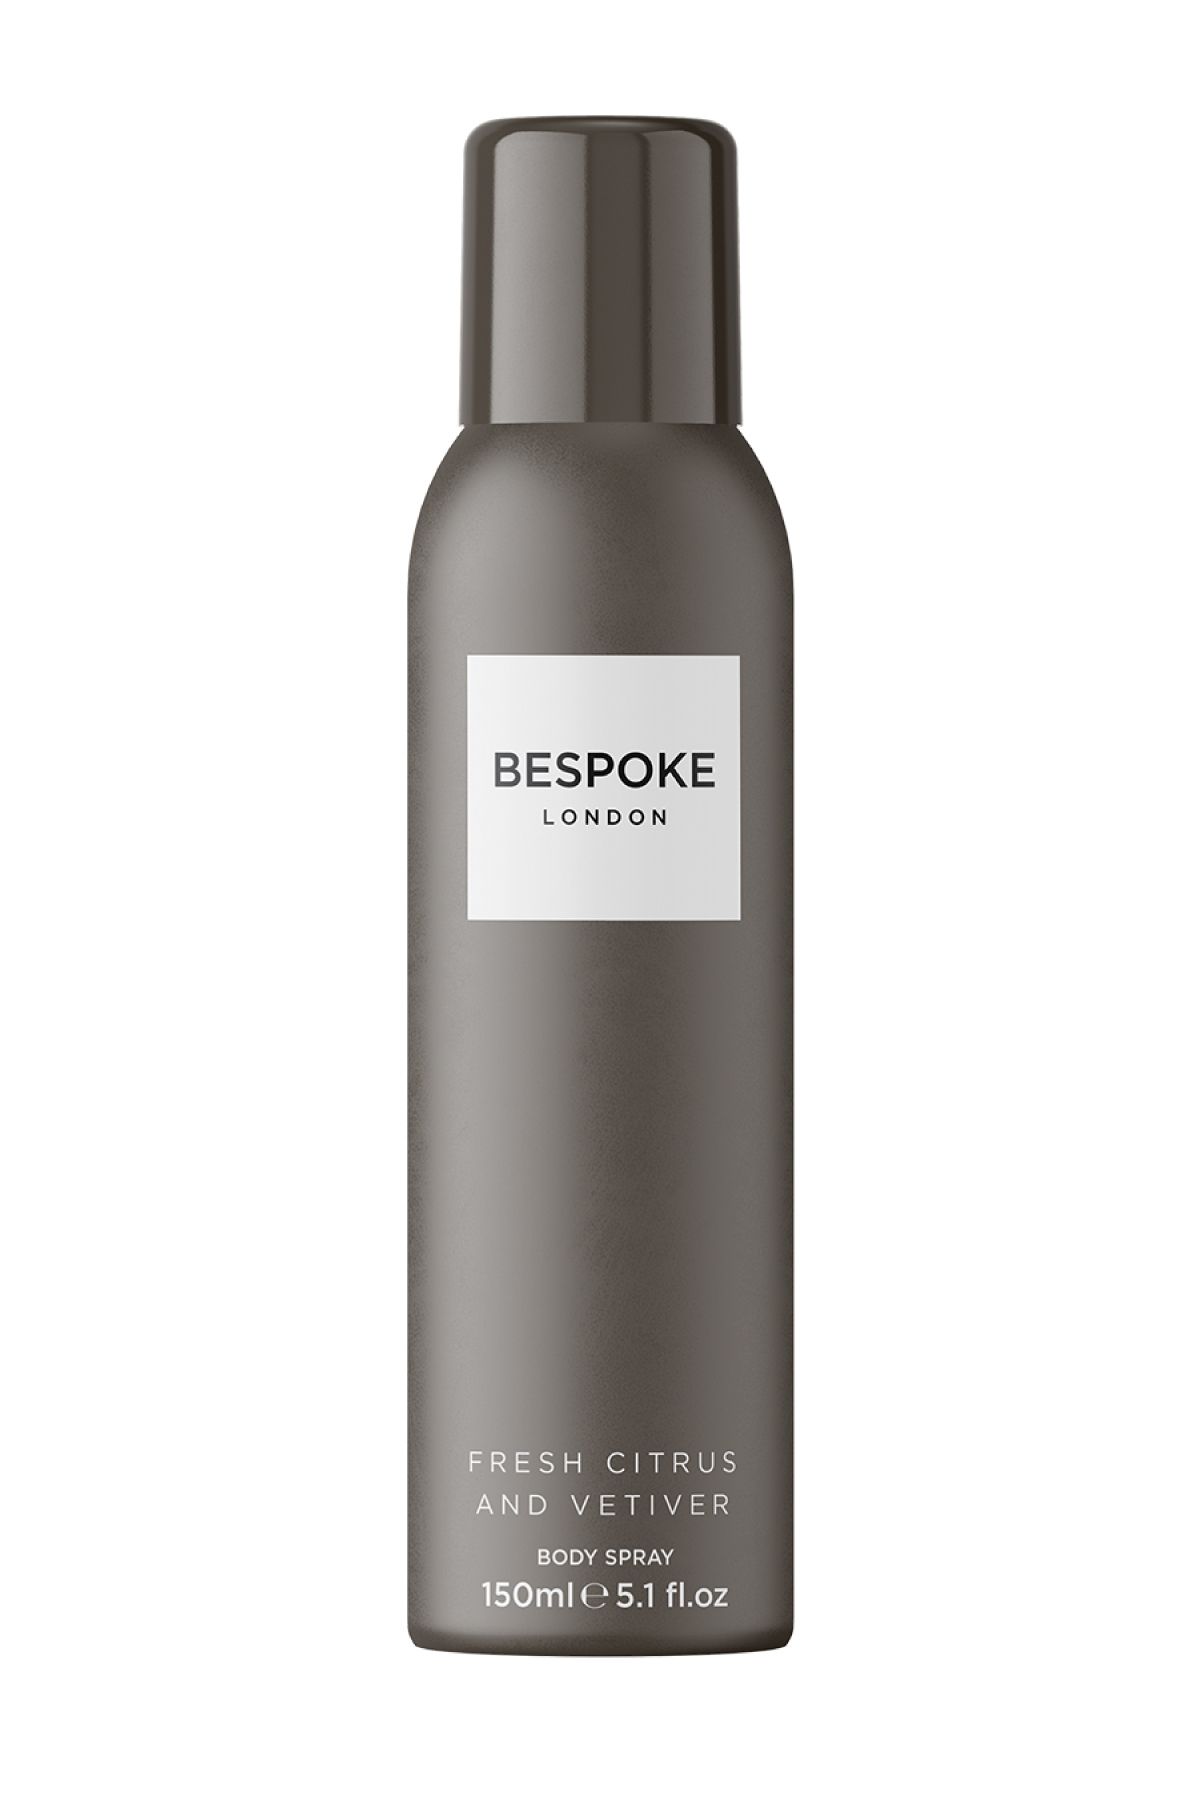 So Fragrance Bespoke - Fresh Citrus and Vetiver - Erkek Deodorant 150ml